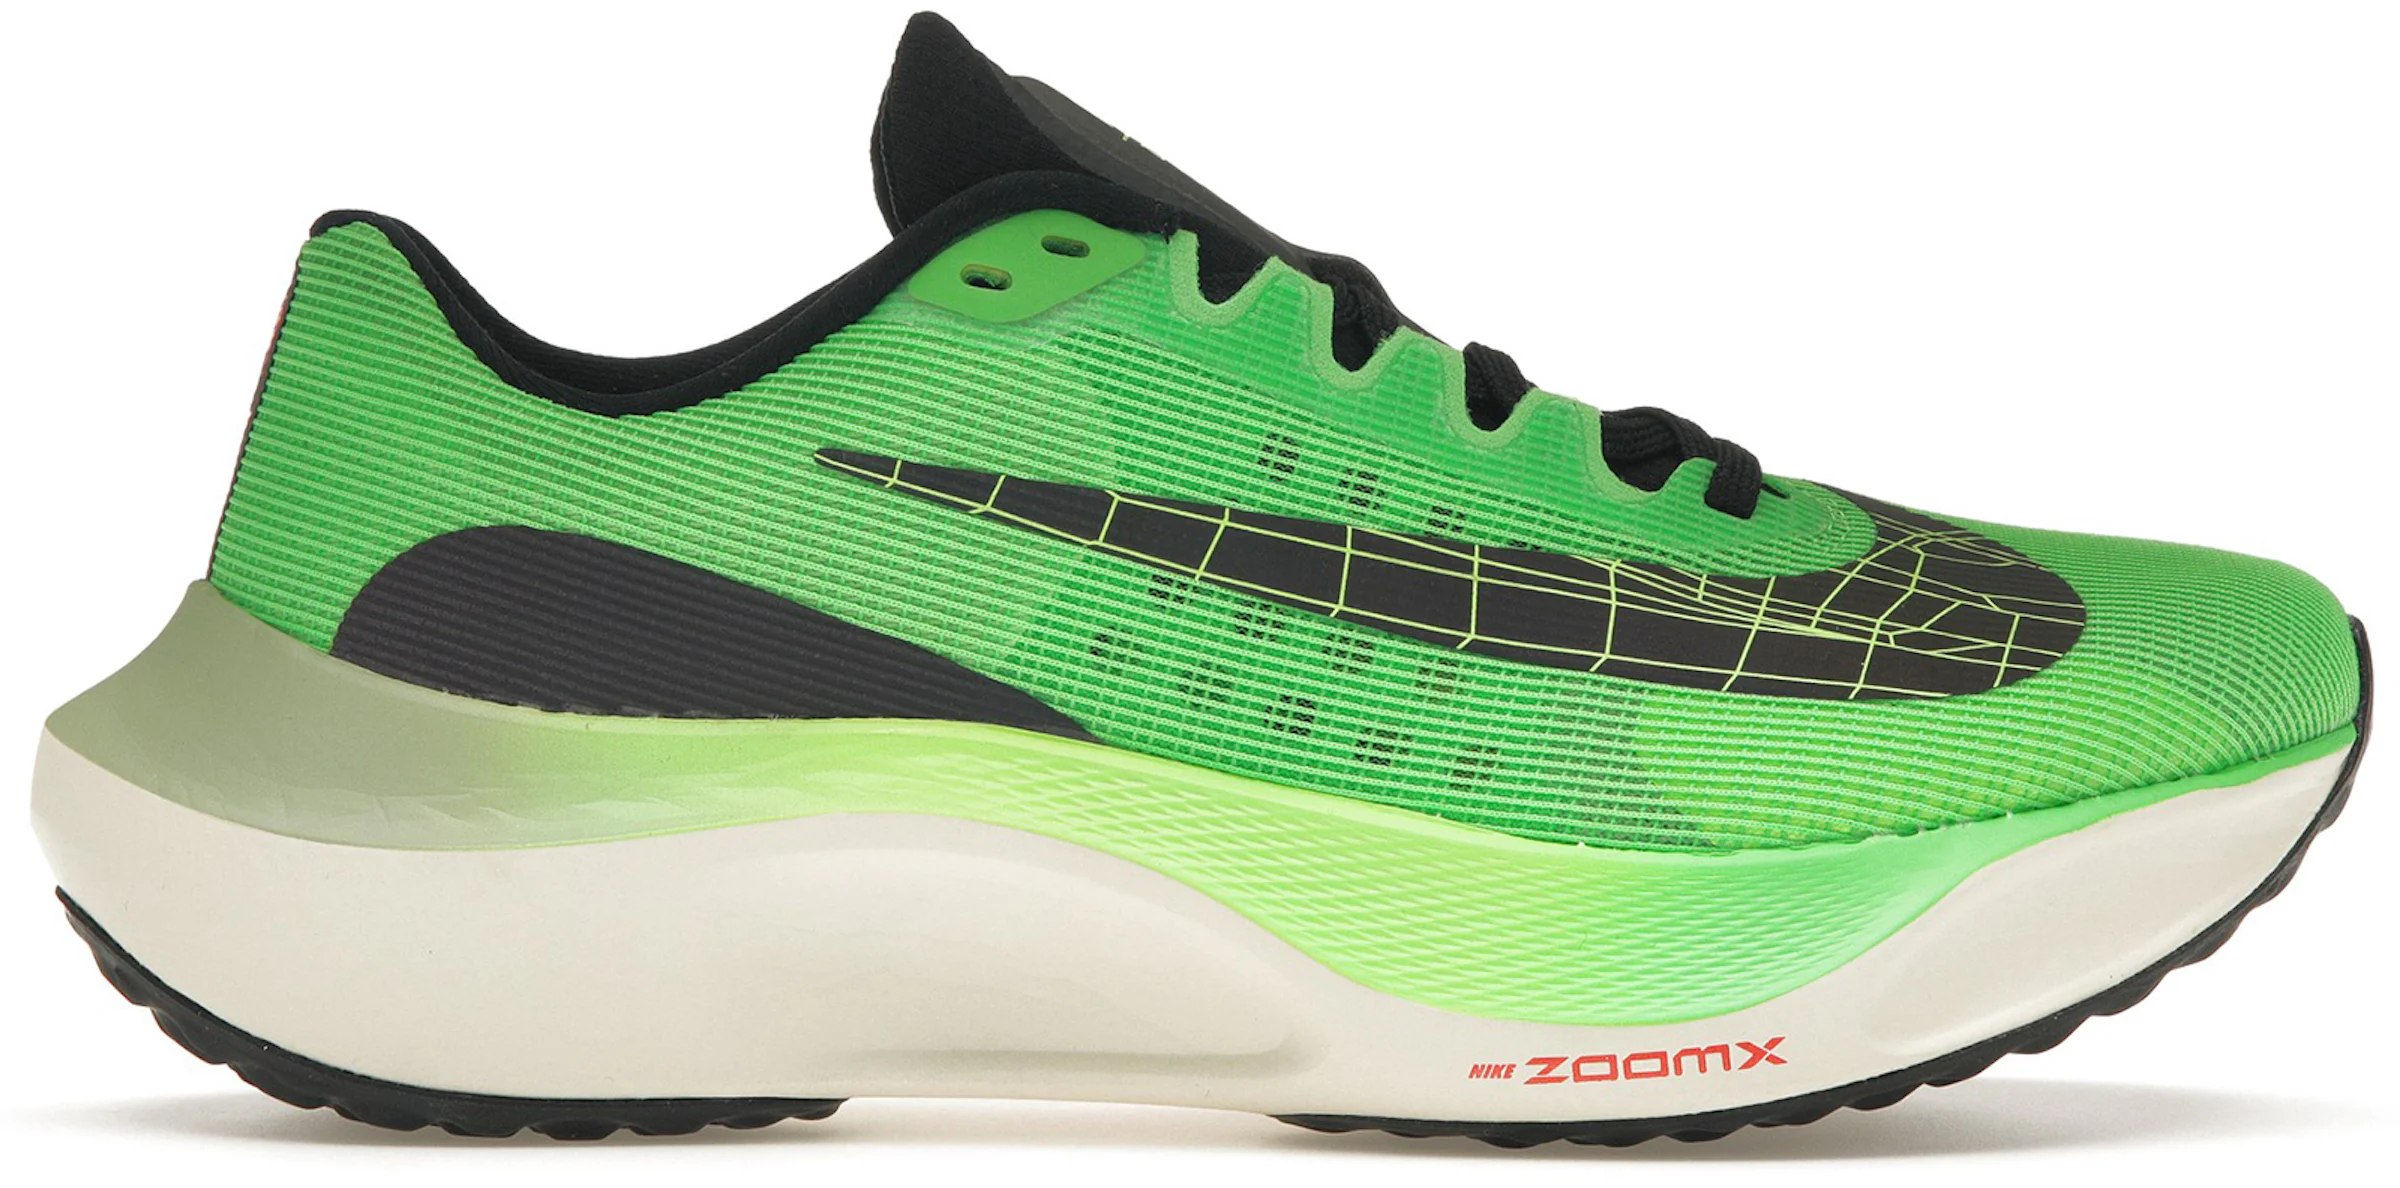 Nike Zoom Fly 5 Review: Zoom Fly or Zoom Die? - Believe in the Run